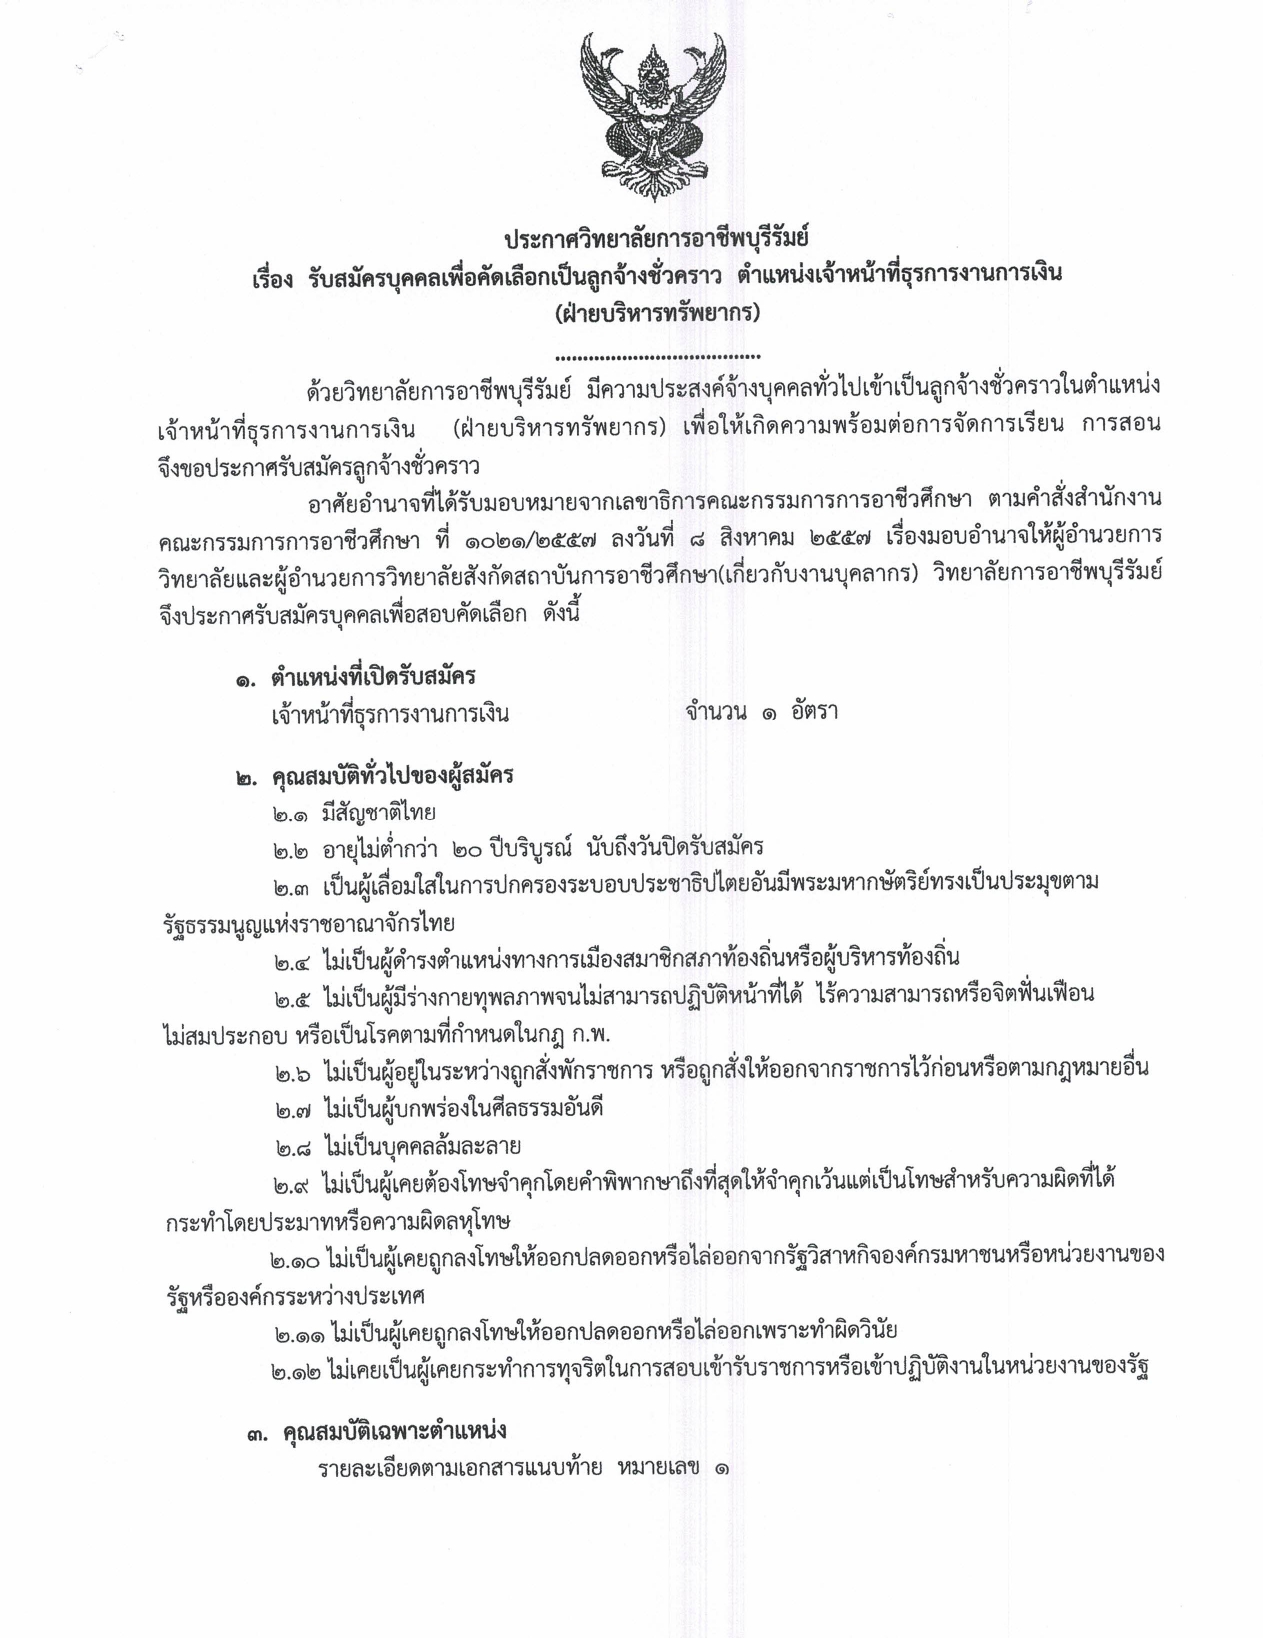 ประกาศวิทยาลัยการอาชีพบุรีรัมย์ page 0001